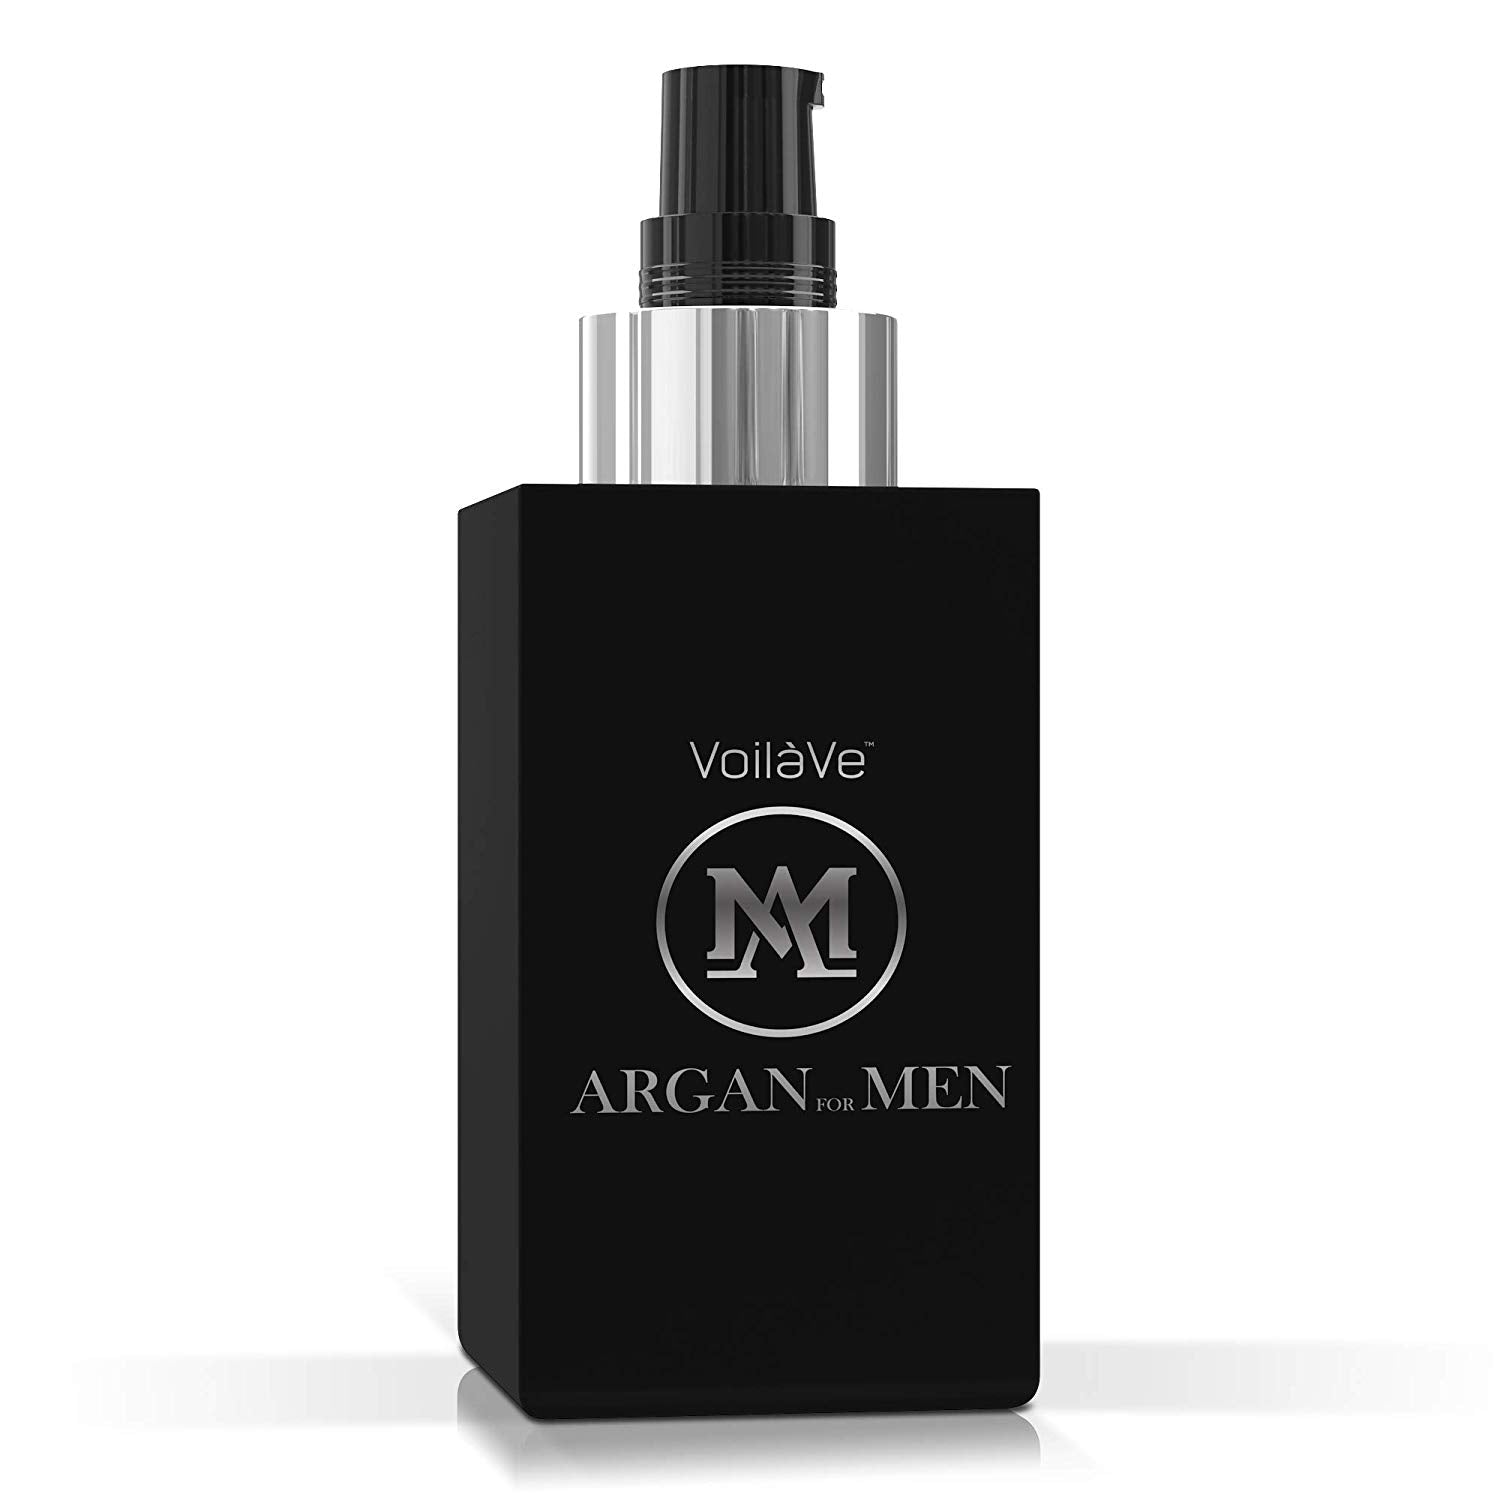 VoilaVe Argan Man Skin, Hair, Beard, and Body Oil for Men